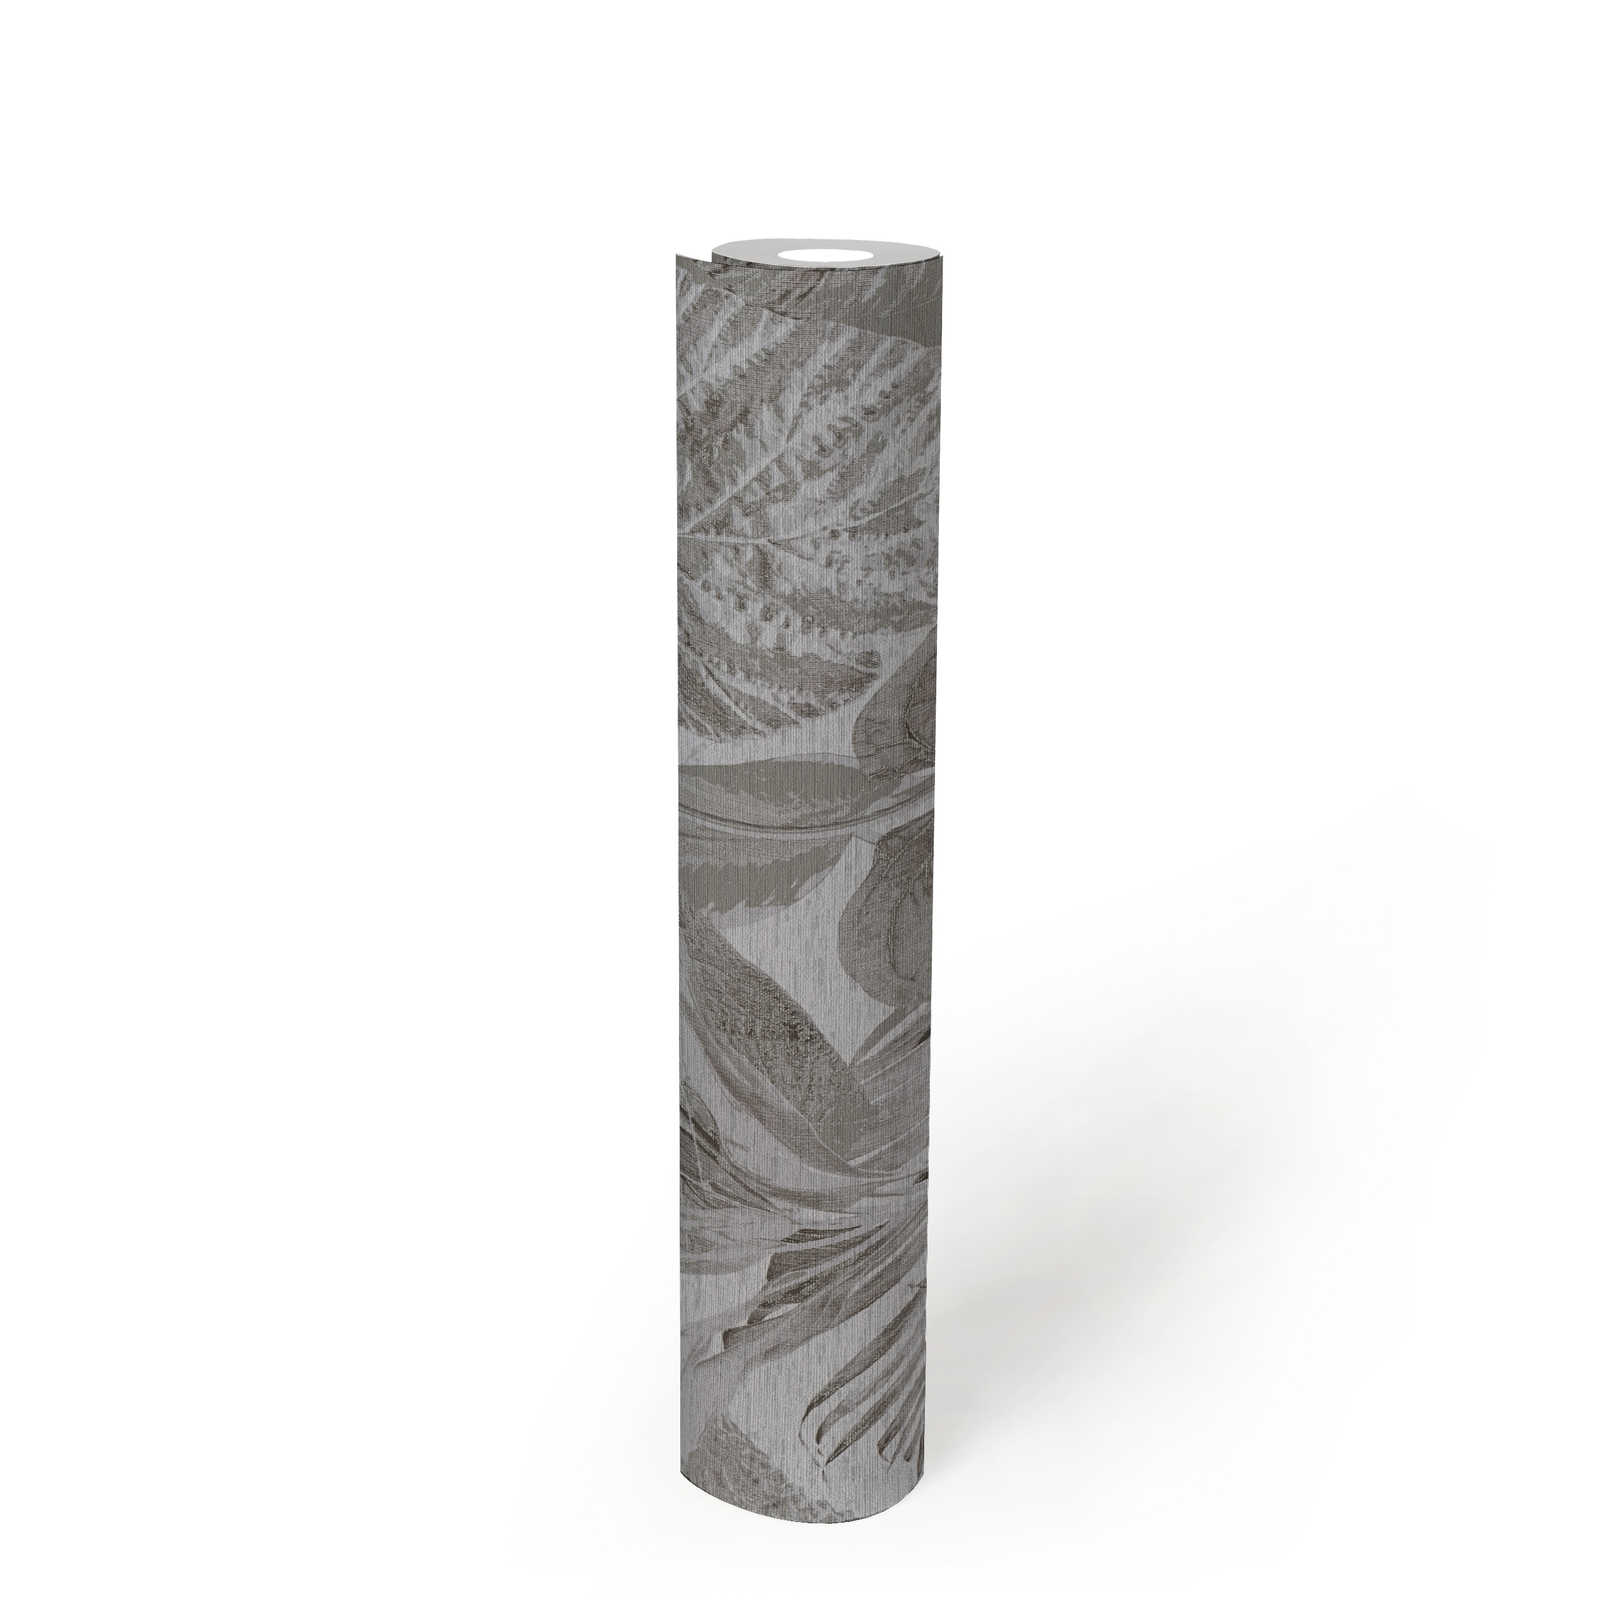             papier peint en papier avec motif jungle légèrement structuré, mat - gris, anthracite
        